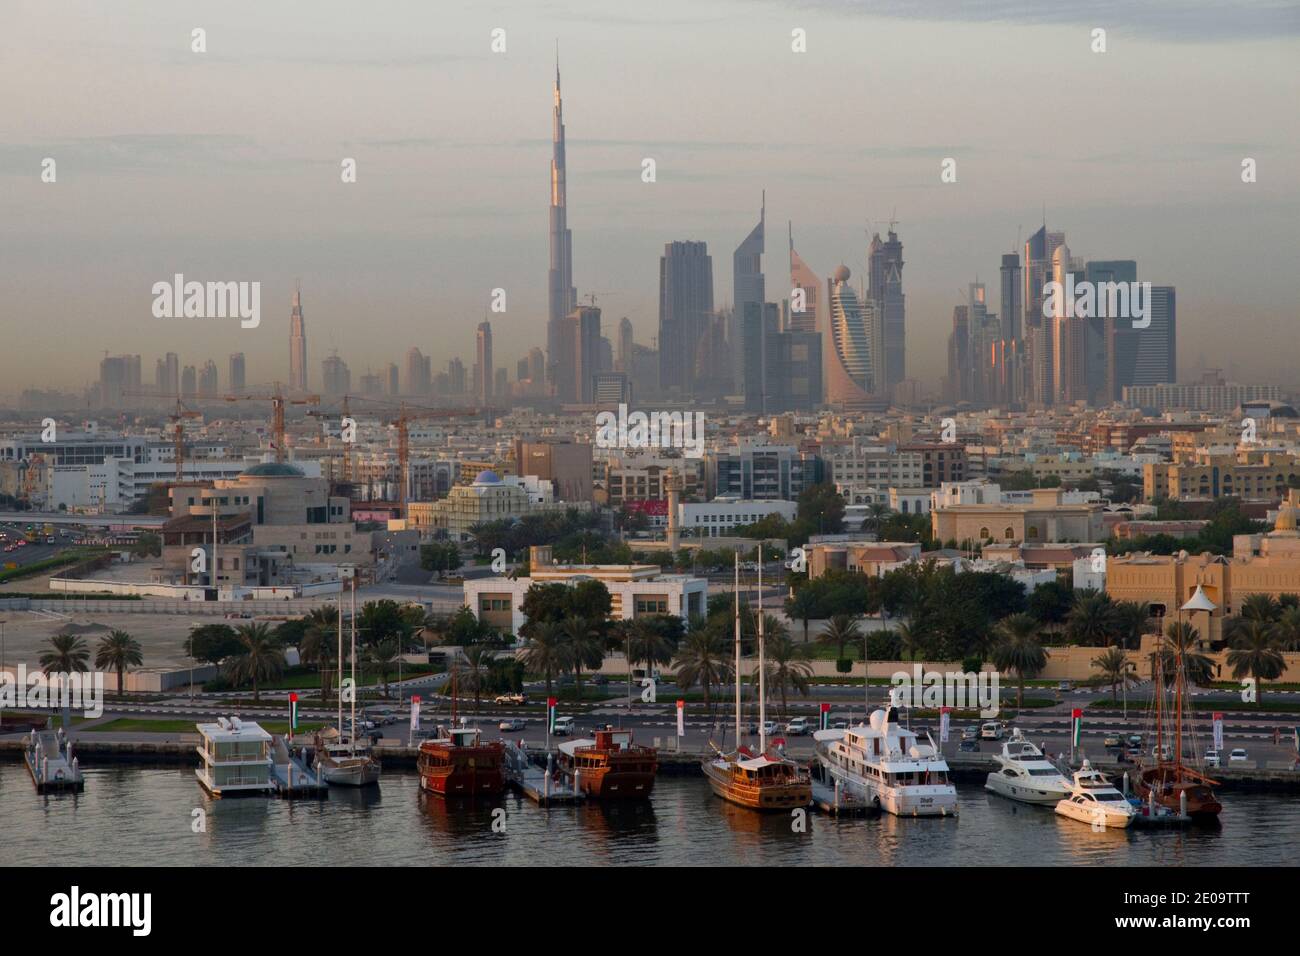 DUBAI CITY, THE HARBOUR, UNITED ARAB EMIRATES.VUE DE DUBAI, LE PORT, EMIRATS ARABES UNIS. PHOTO BY FREDERIC REGLAIN/ABACAPRESS.COM Stock Photo